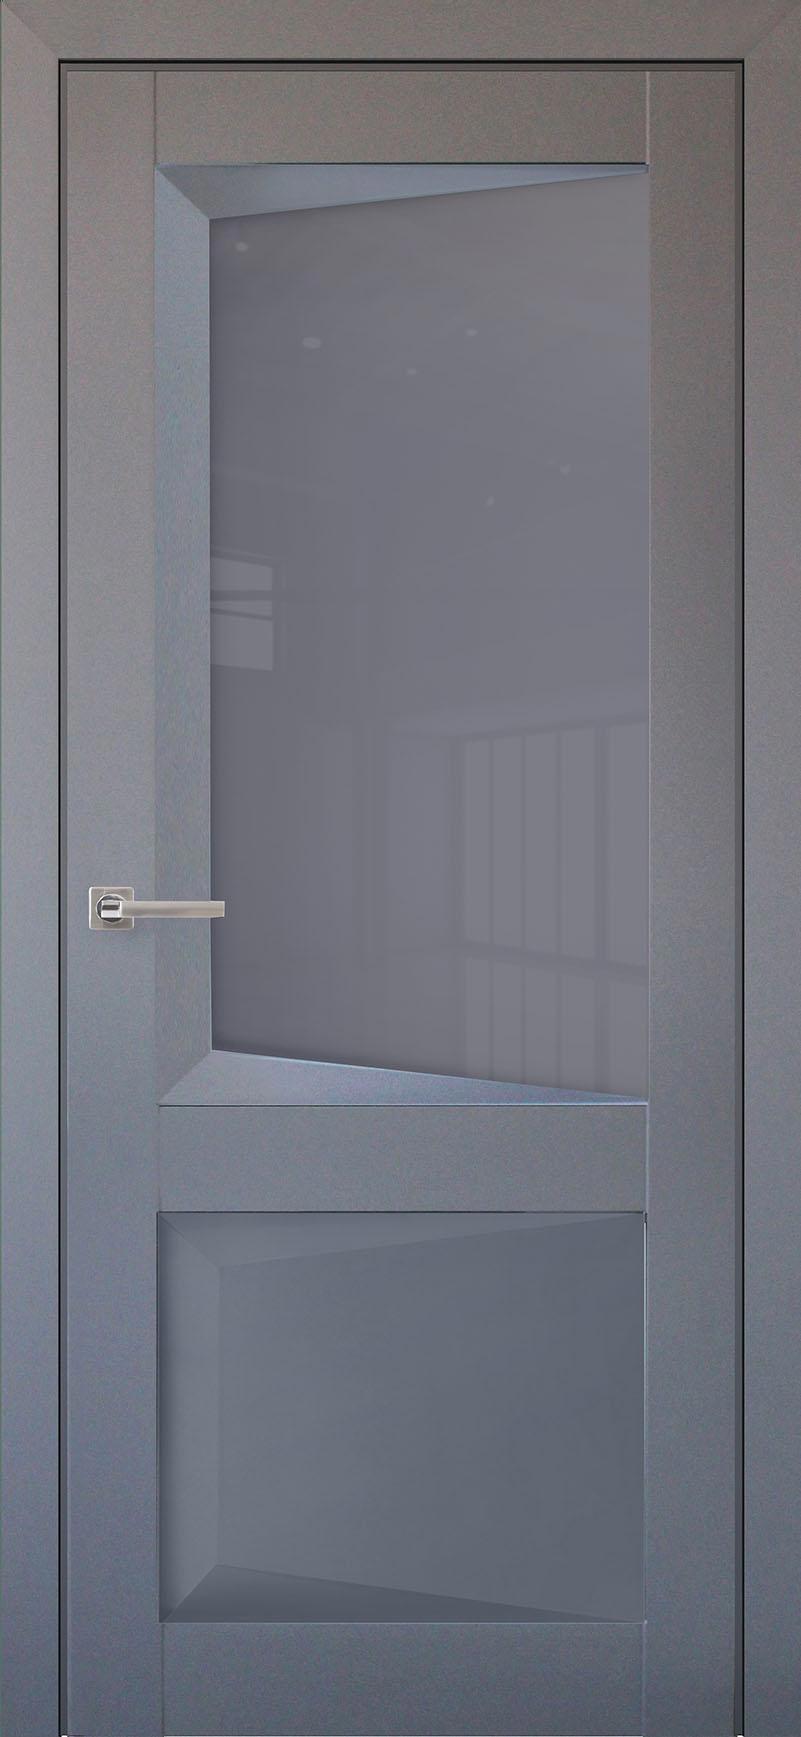 90903215 Межкомнатная дверь Перфекто 108 остеклённая без замка и петель в комплекте 200x90см серый STLM-0420041 UBERTURE